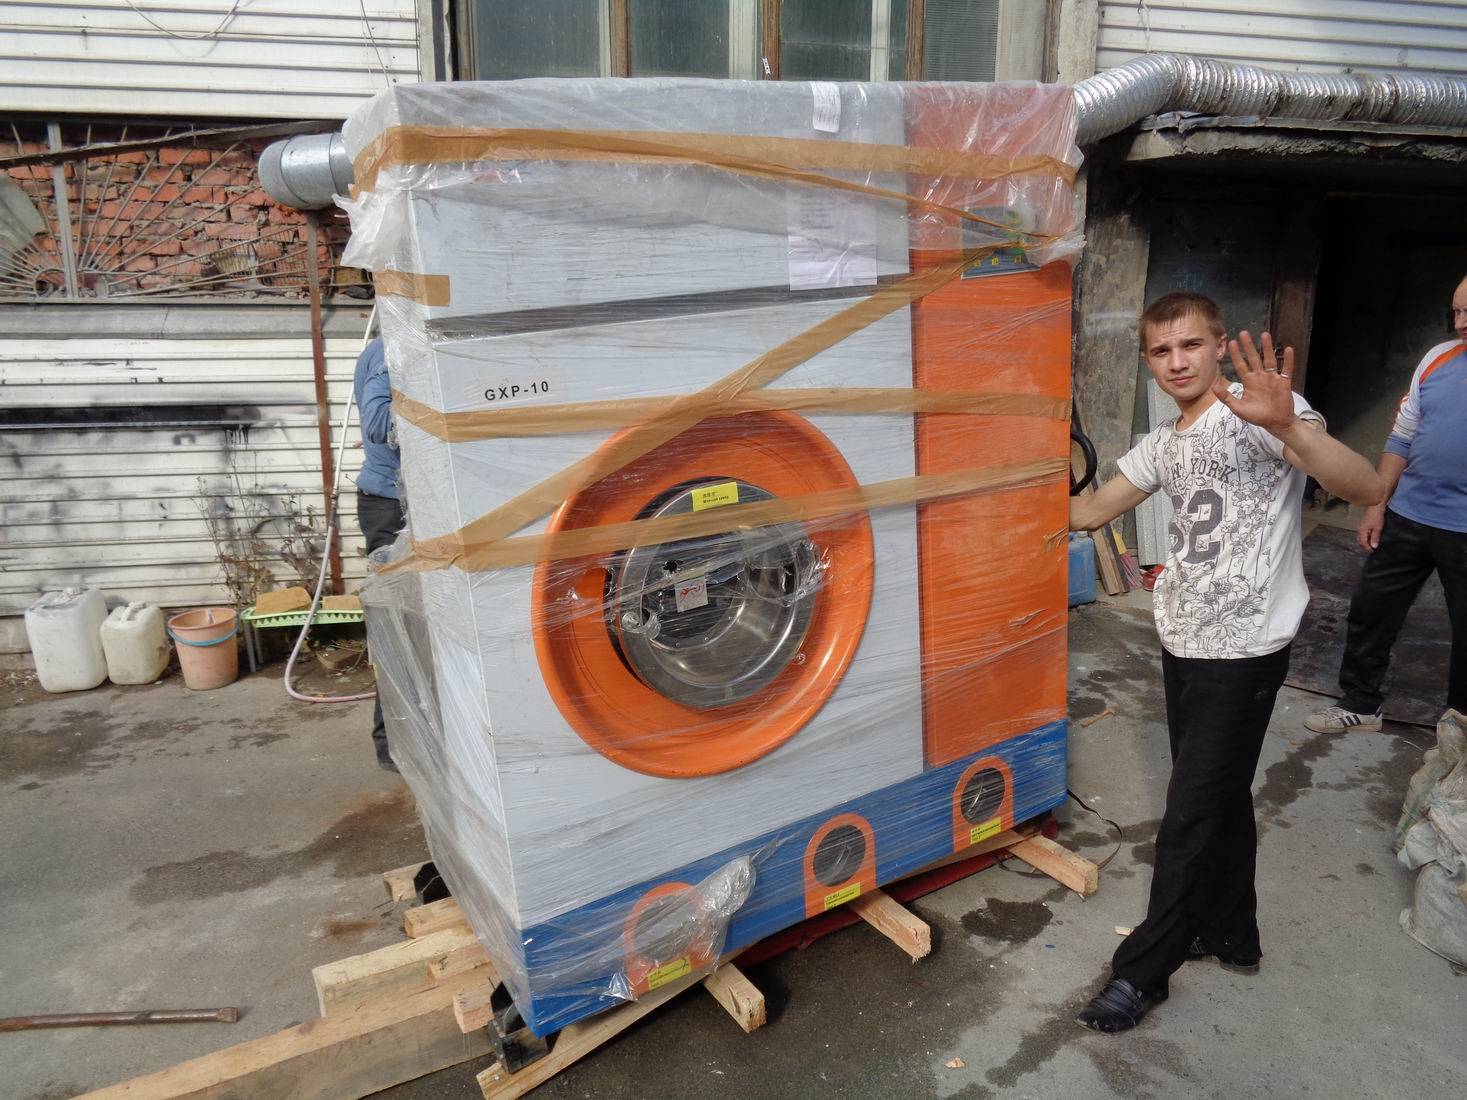 Можно ли перевозить стиральную машину лежа в машине ✅: как без транспортировочных болтов на боку, правильно закрепить барабан автомат, в легковом автомобиле